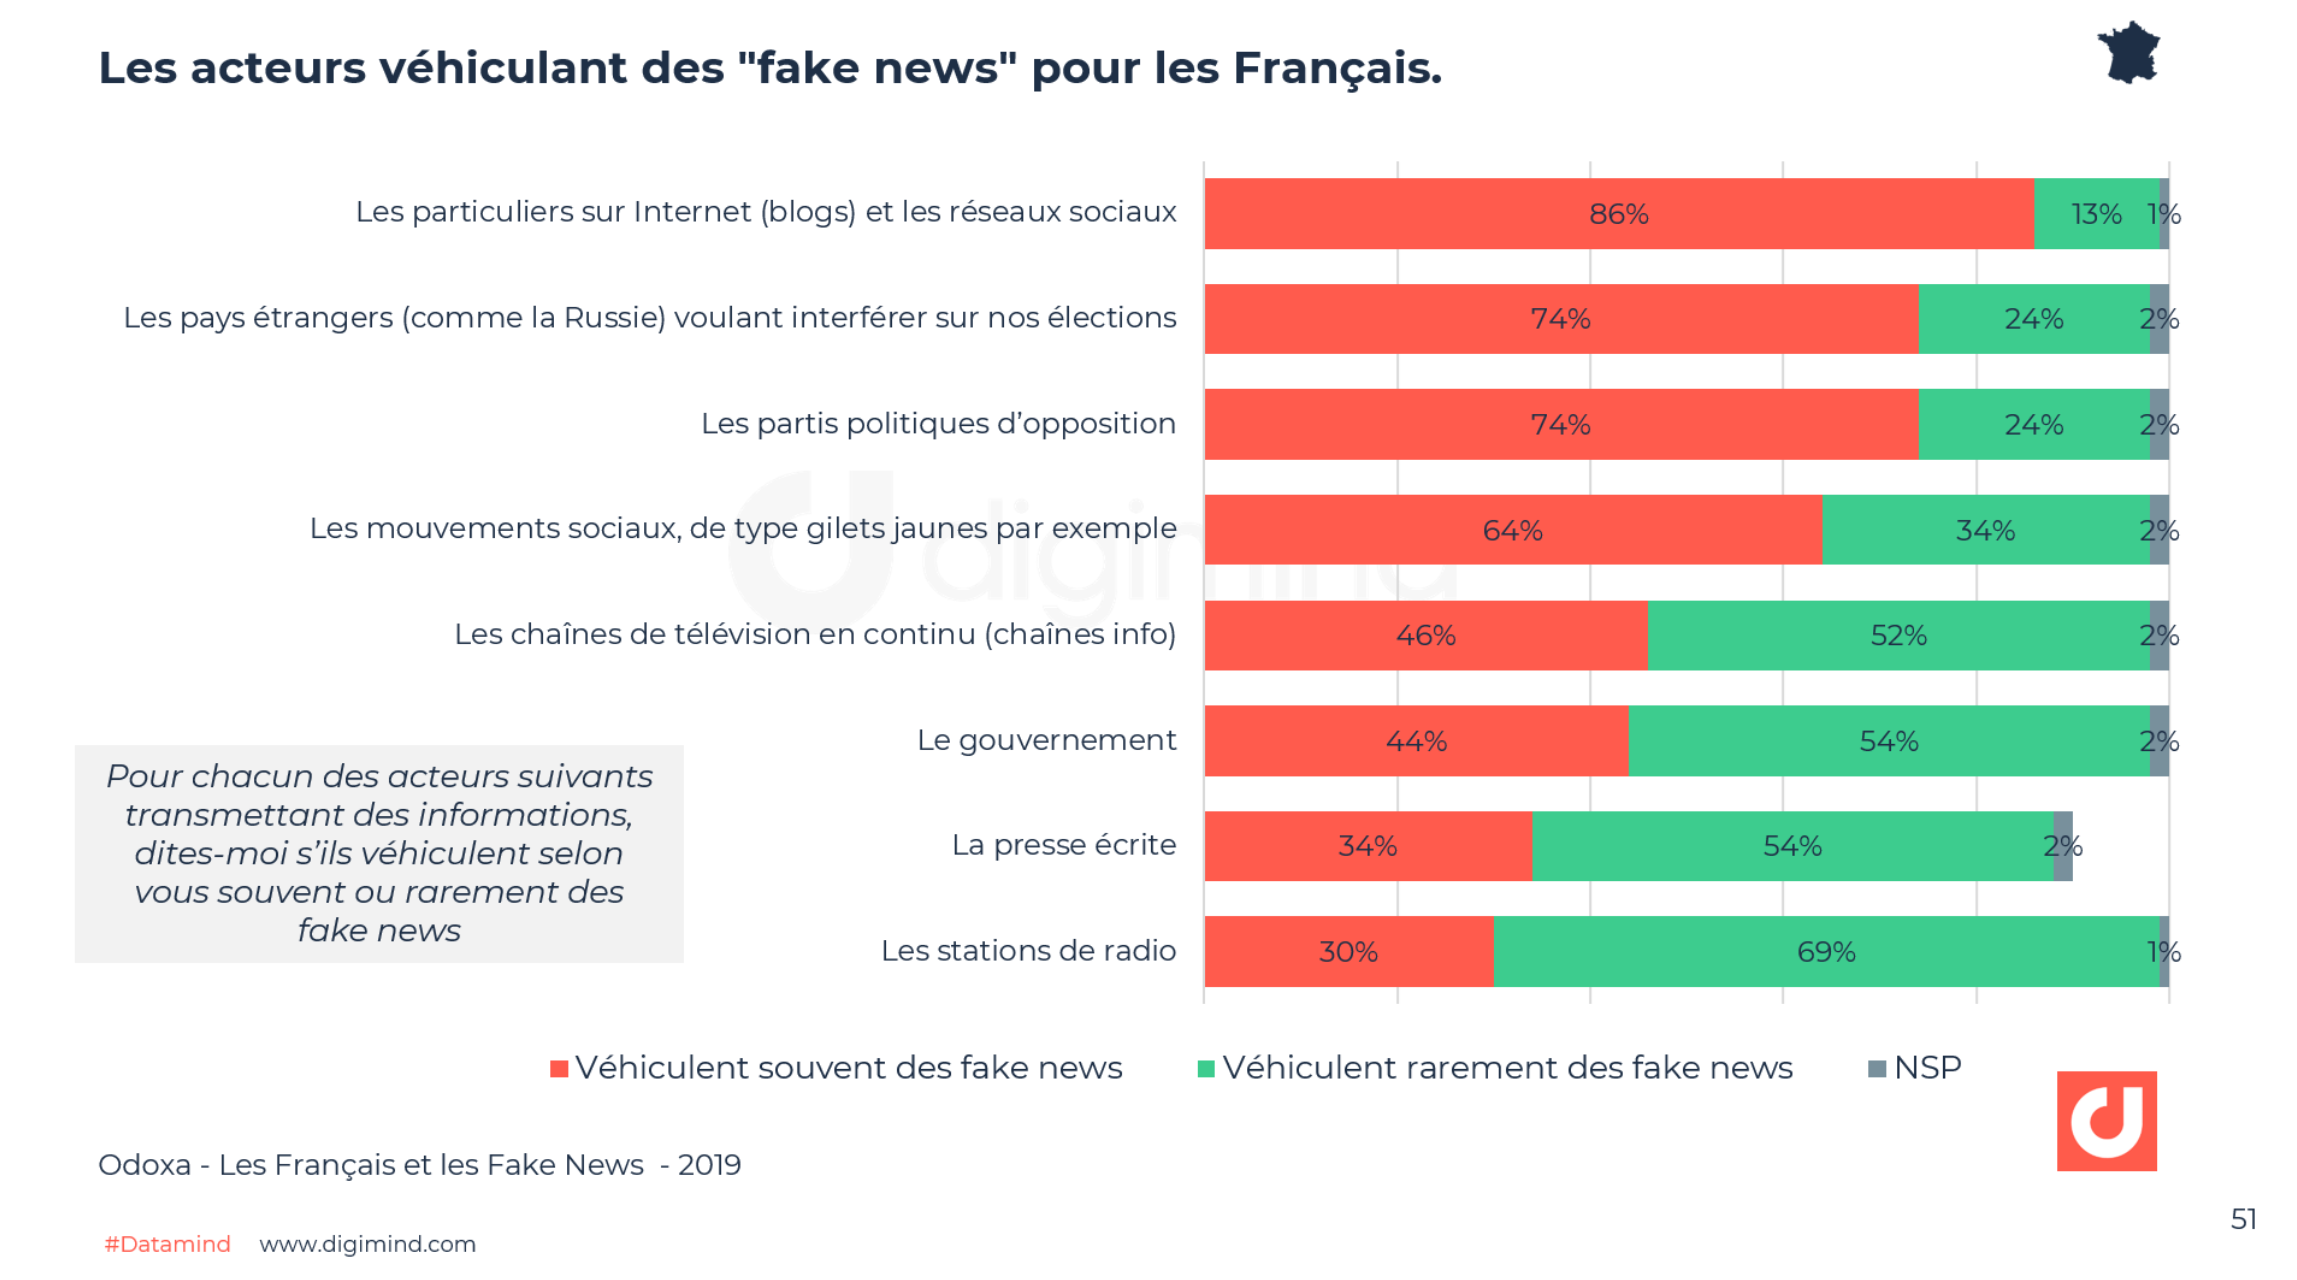 Les acteurs véhiculant des "fake news" pour les Français - Odoxa